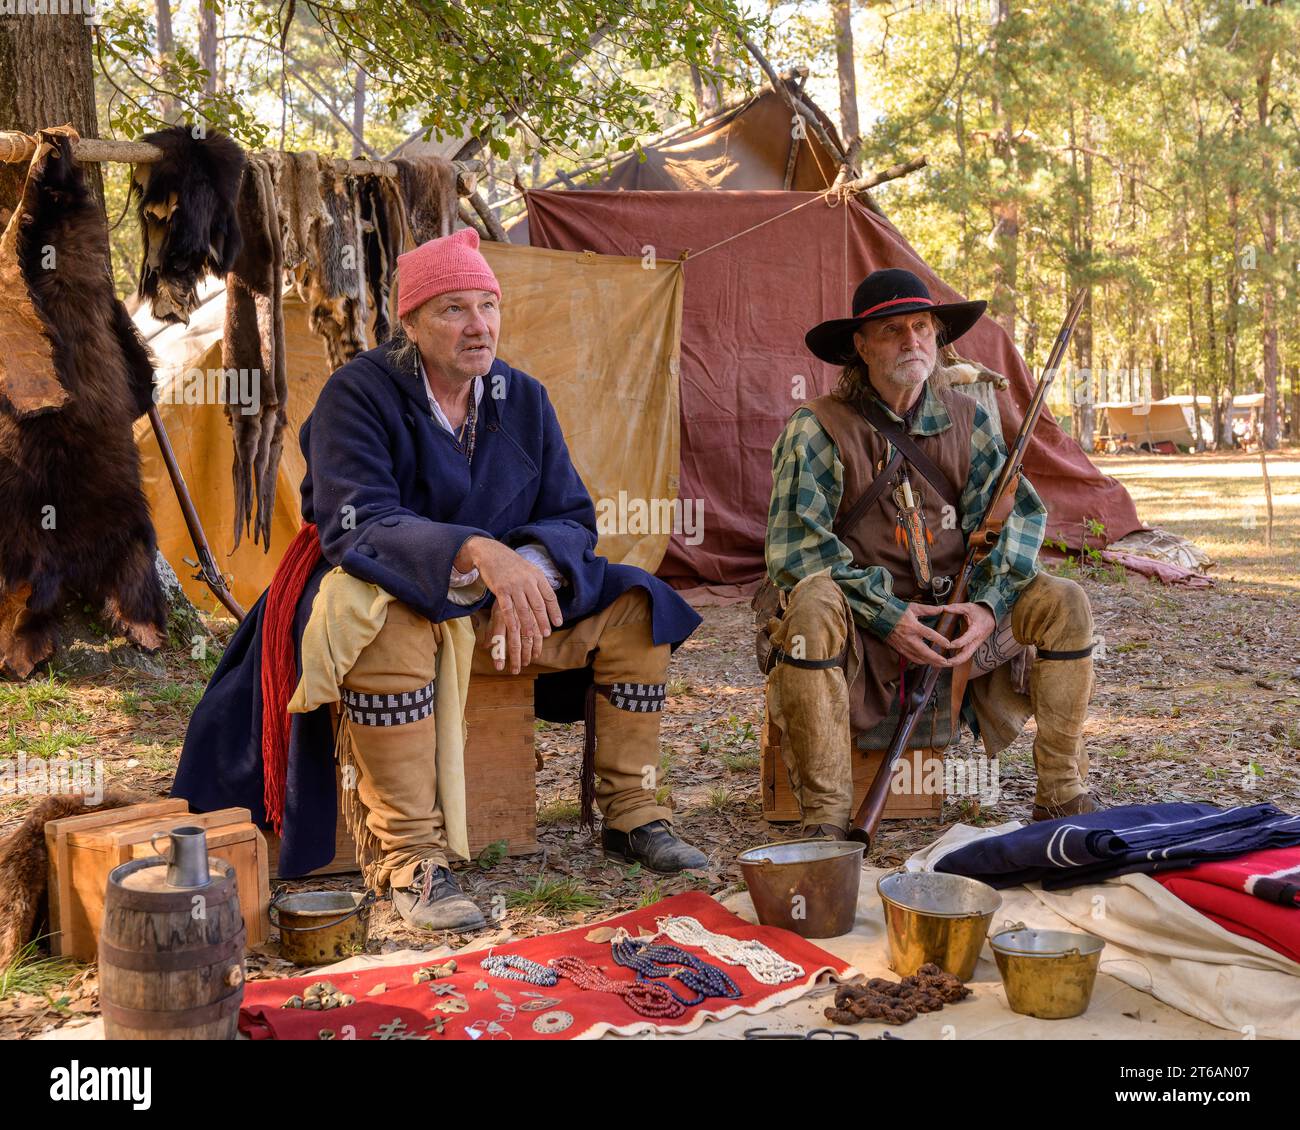 Deux acteurs masculins adultes incarnant des frontiers du début des années 1800 dans un camping lors d'une reconstitution à Wetumpka Alabama, États-Unis. Banque D'Images